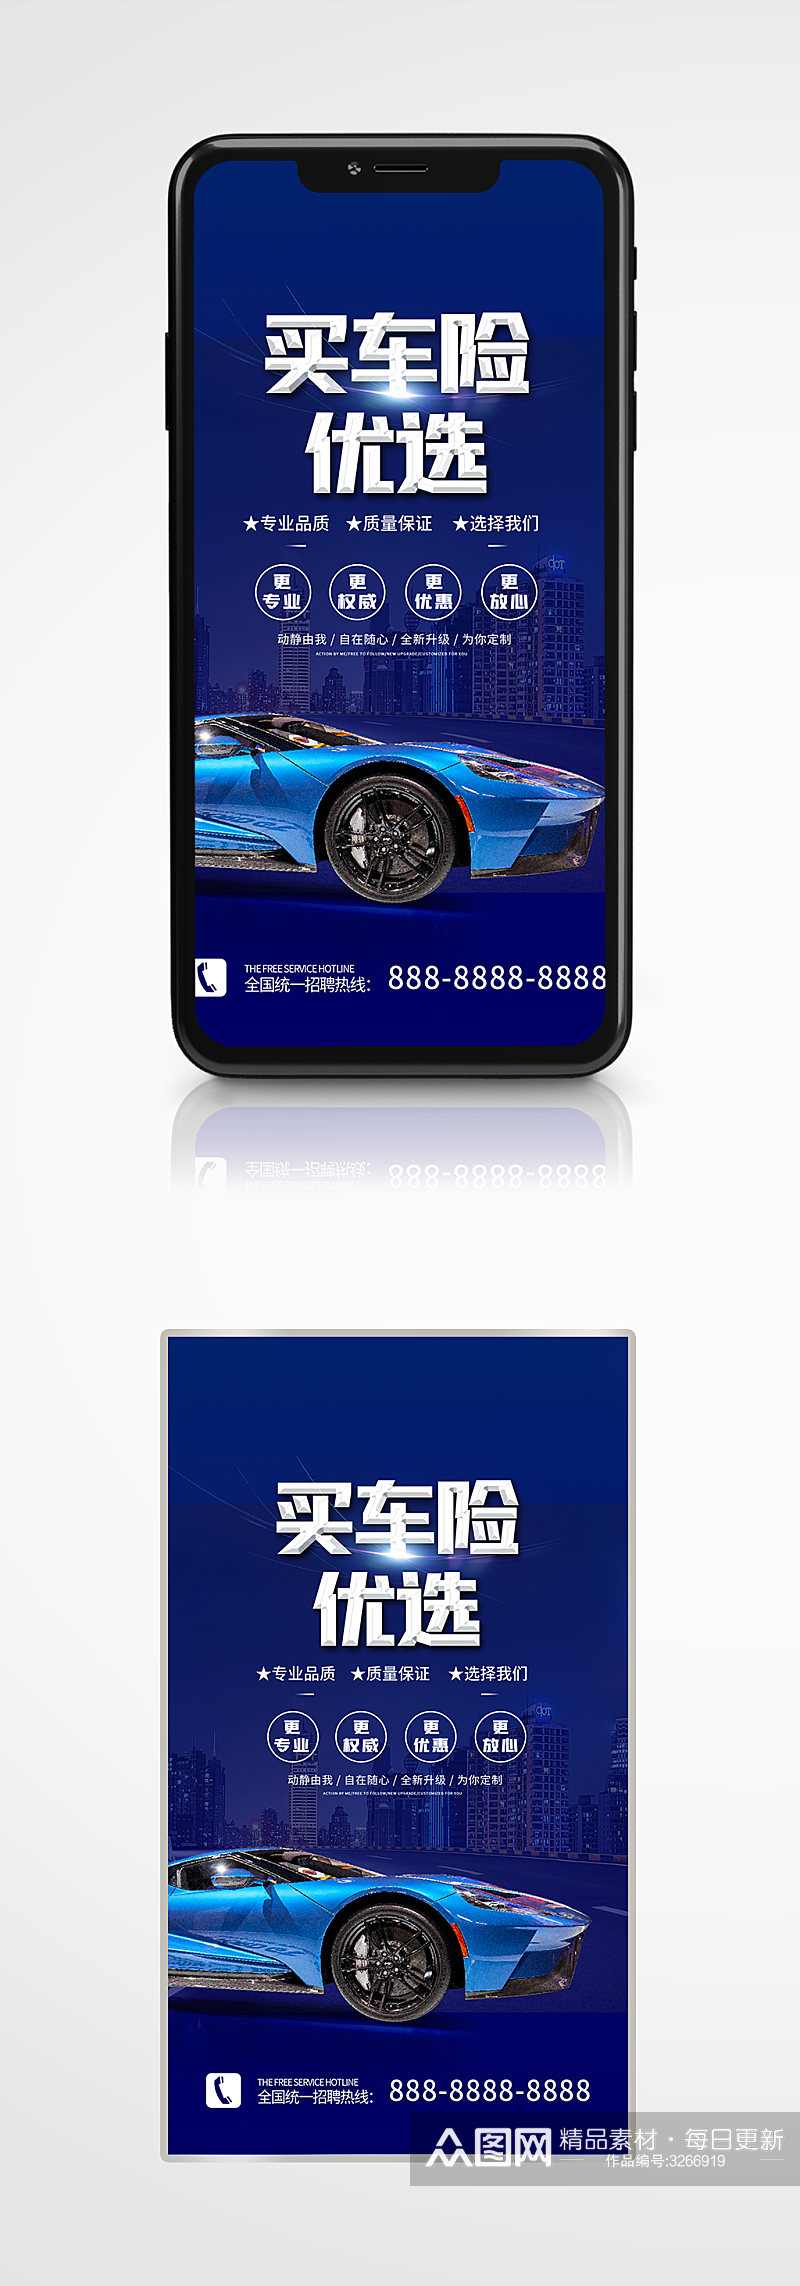 汽车保险宣传手机海报蓝色营销素材